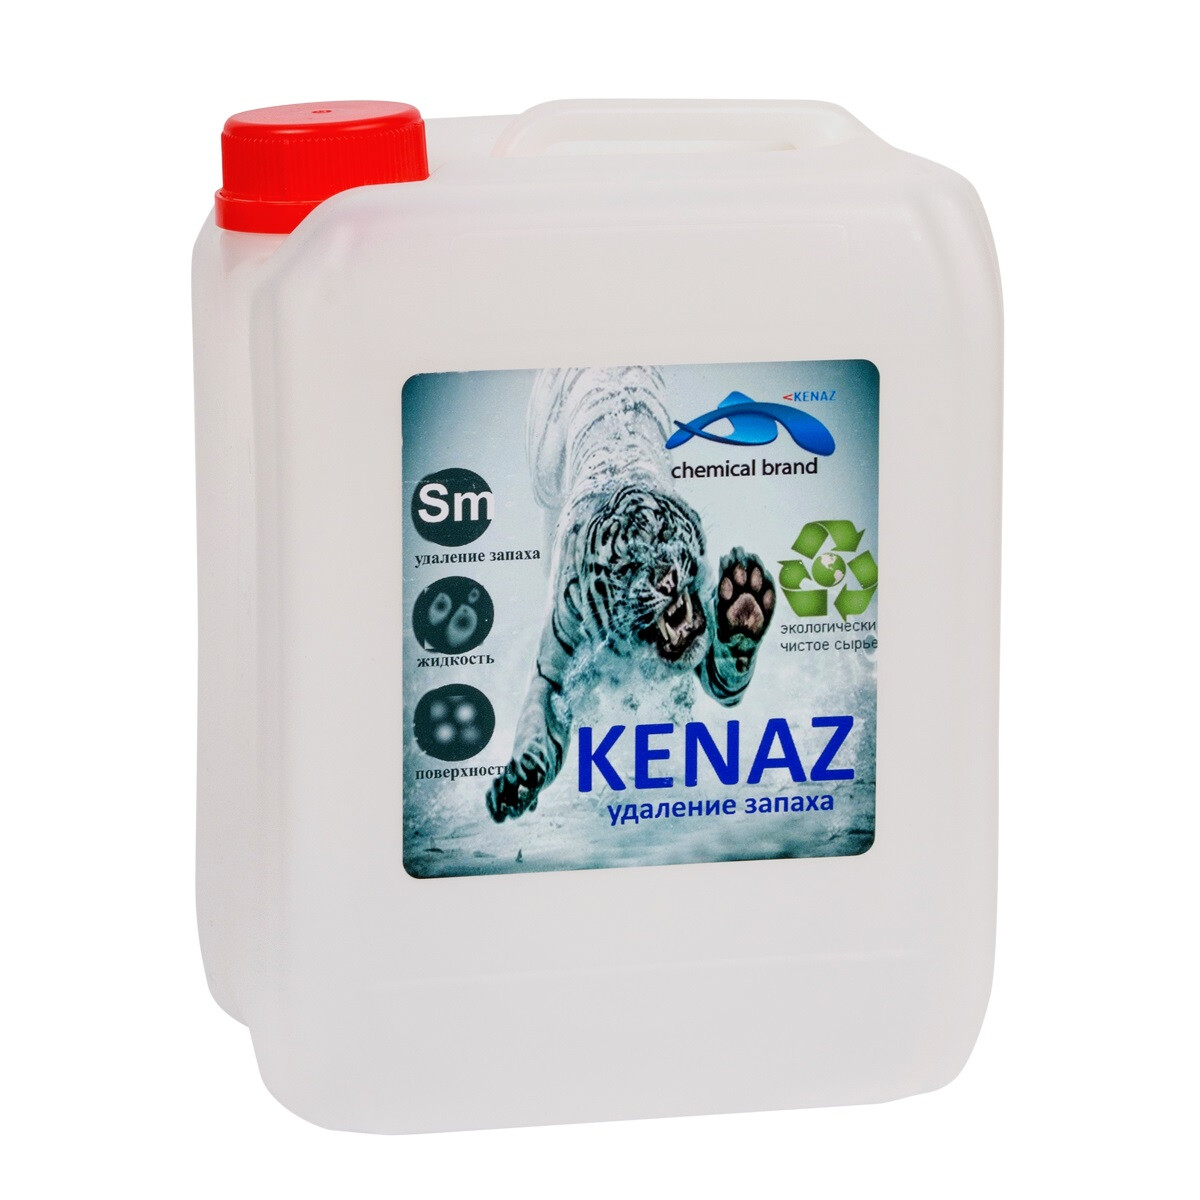 Жидкое средство для удаления запахов Kenaz "Удаление запахов"